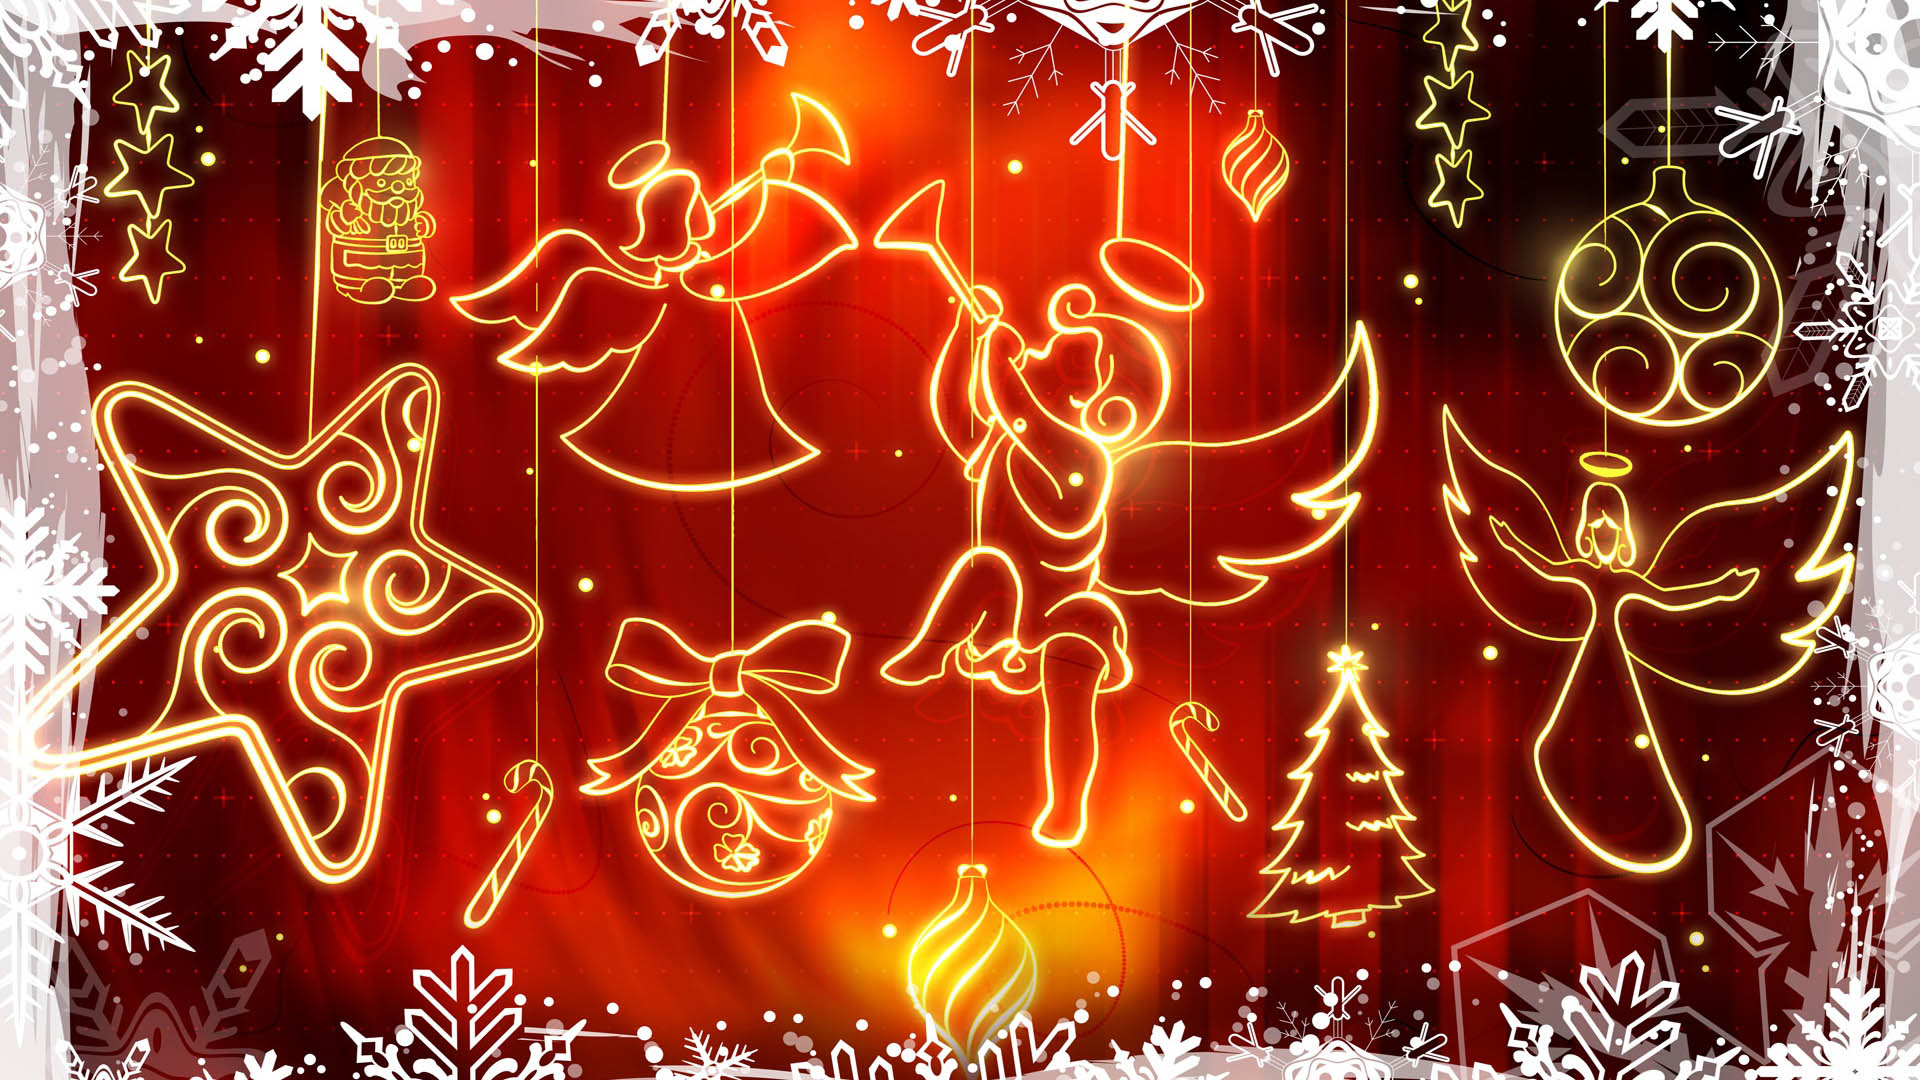 메리 크리스마스 풀 hd 벽지,빨간,크리스마스 장식,본문,크리스마스 장식,피